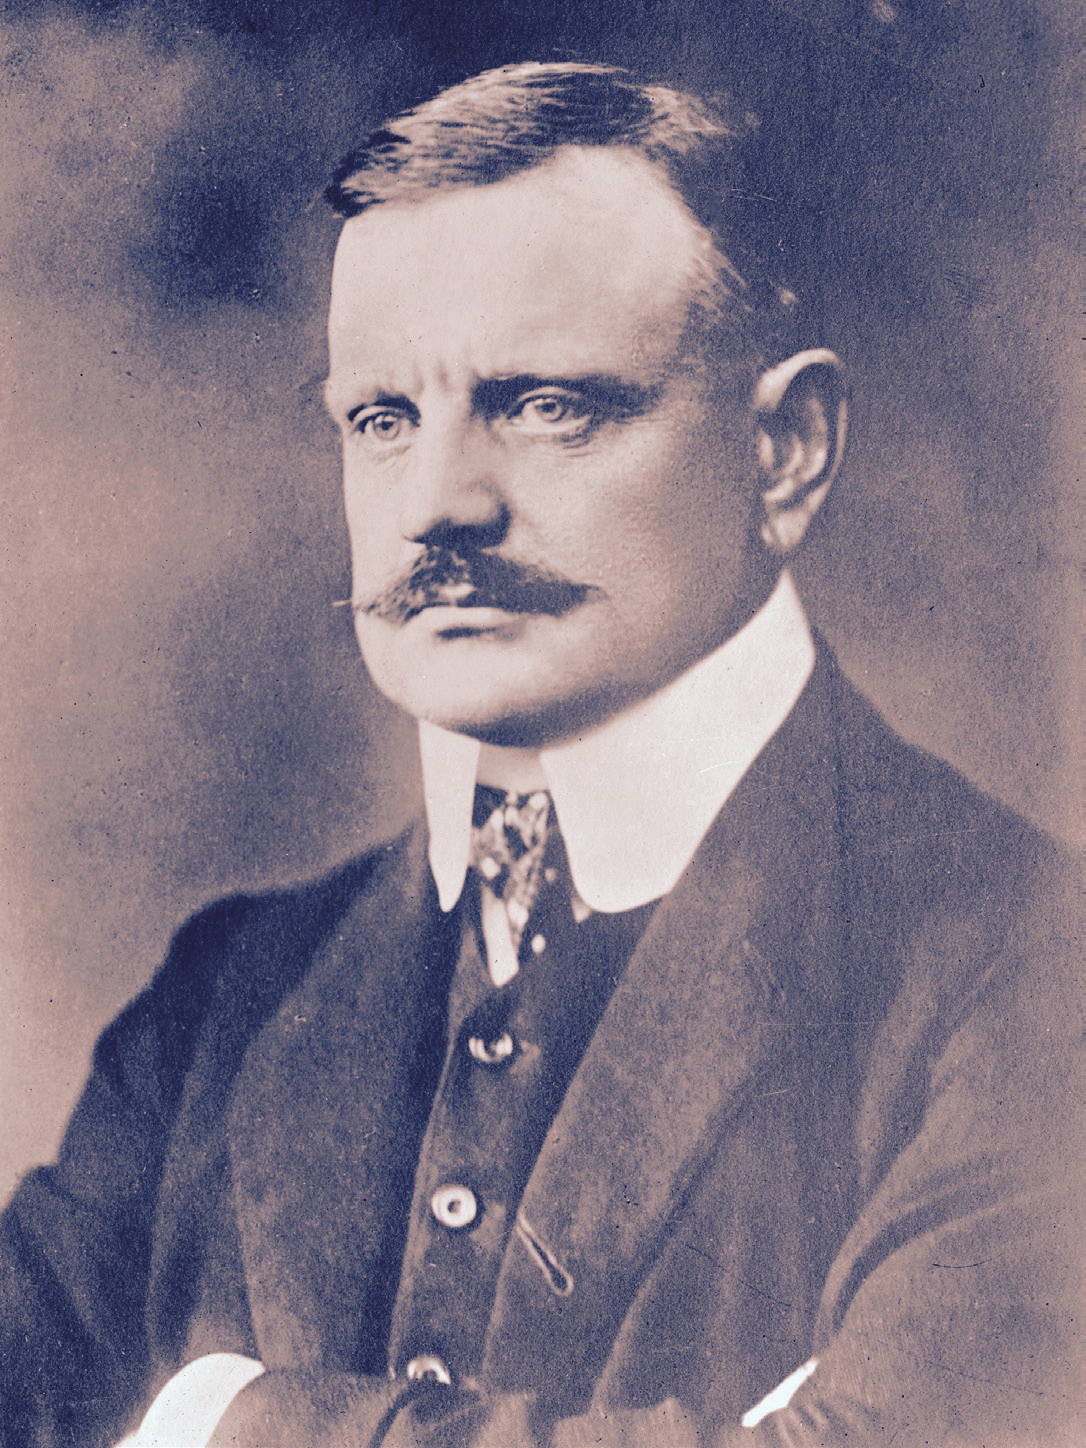 Jean Sibelius Den store tonsättaren är en stor del av finländsk historia. Genom musiken kunde han uttrycka känslor, oro och ångest och framför allt motstridigheter.